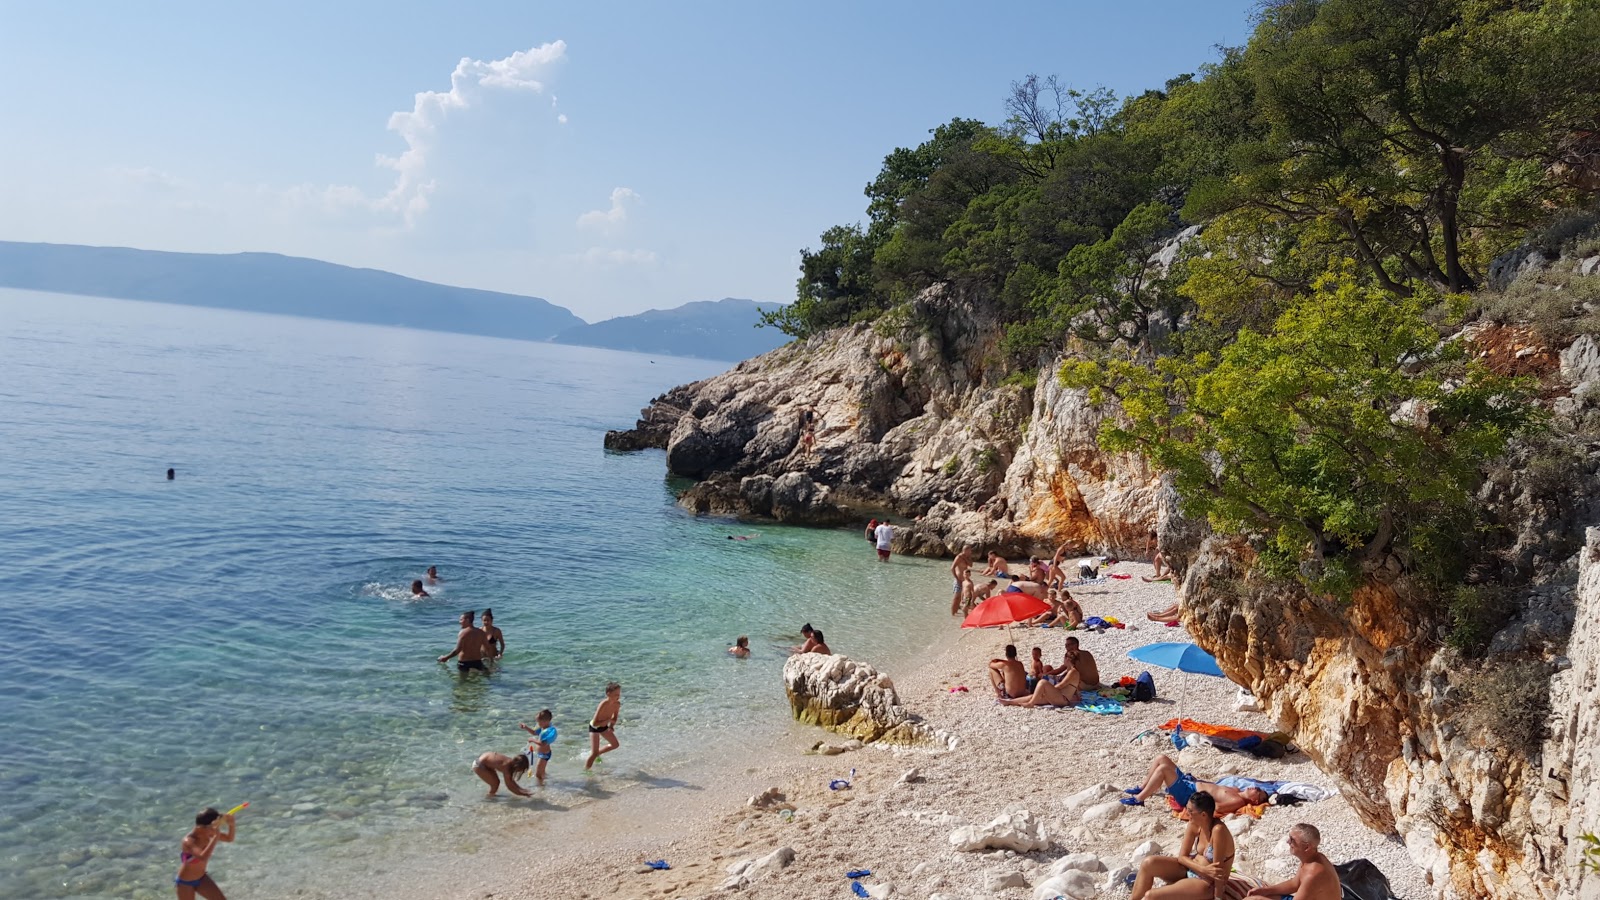 Photo of Dragozetici beach with small bay